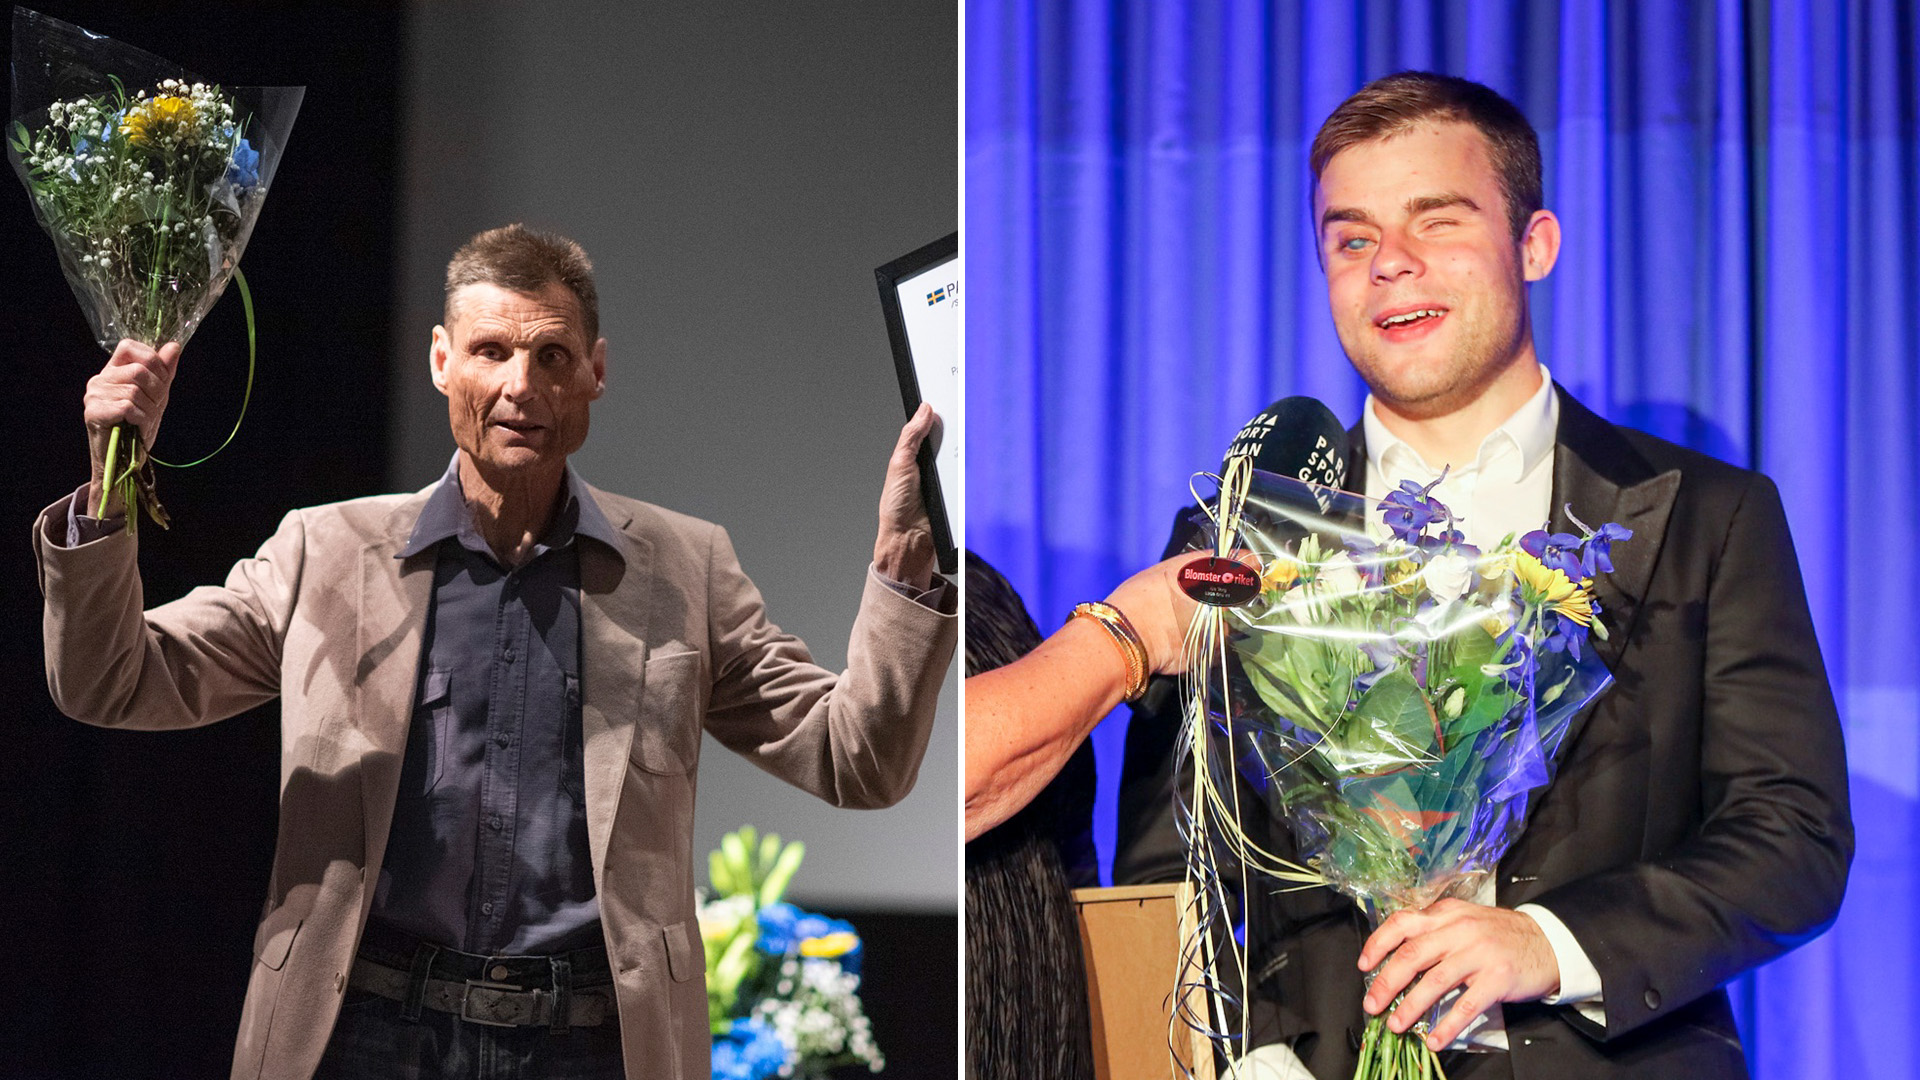 Bilden är ett montage av två bilder. Den första bilden visar Nils Peter Kling som sträcker upp blommor och diplom i luften efter att ha valts in i Parasportens Hall of fame. Den andra bilden visar en glad Zebastian Modin, med blommor och diplom i händerna, när han blir intervjuad på Parasportgalan efter att ha mottagit utmärkelsen.